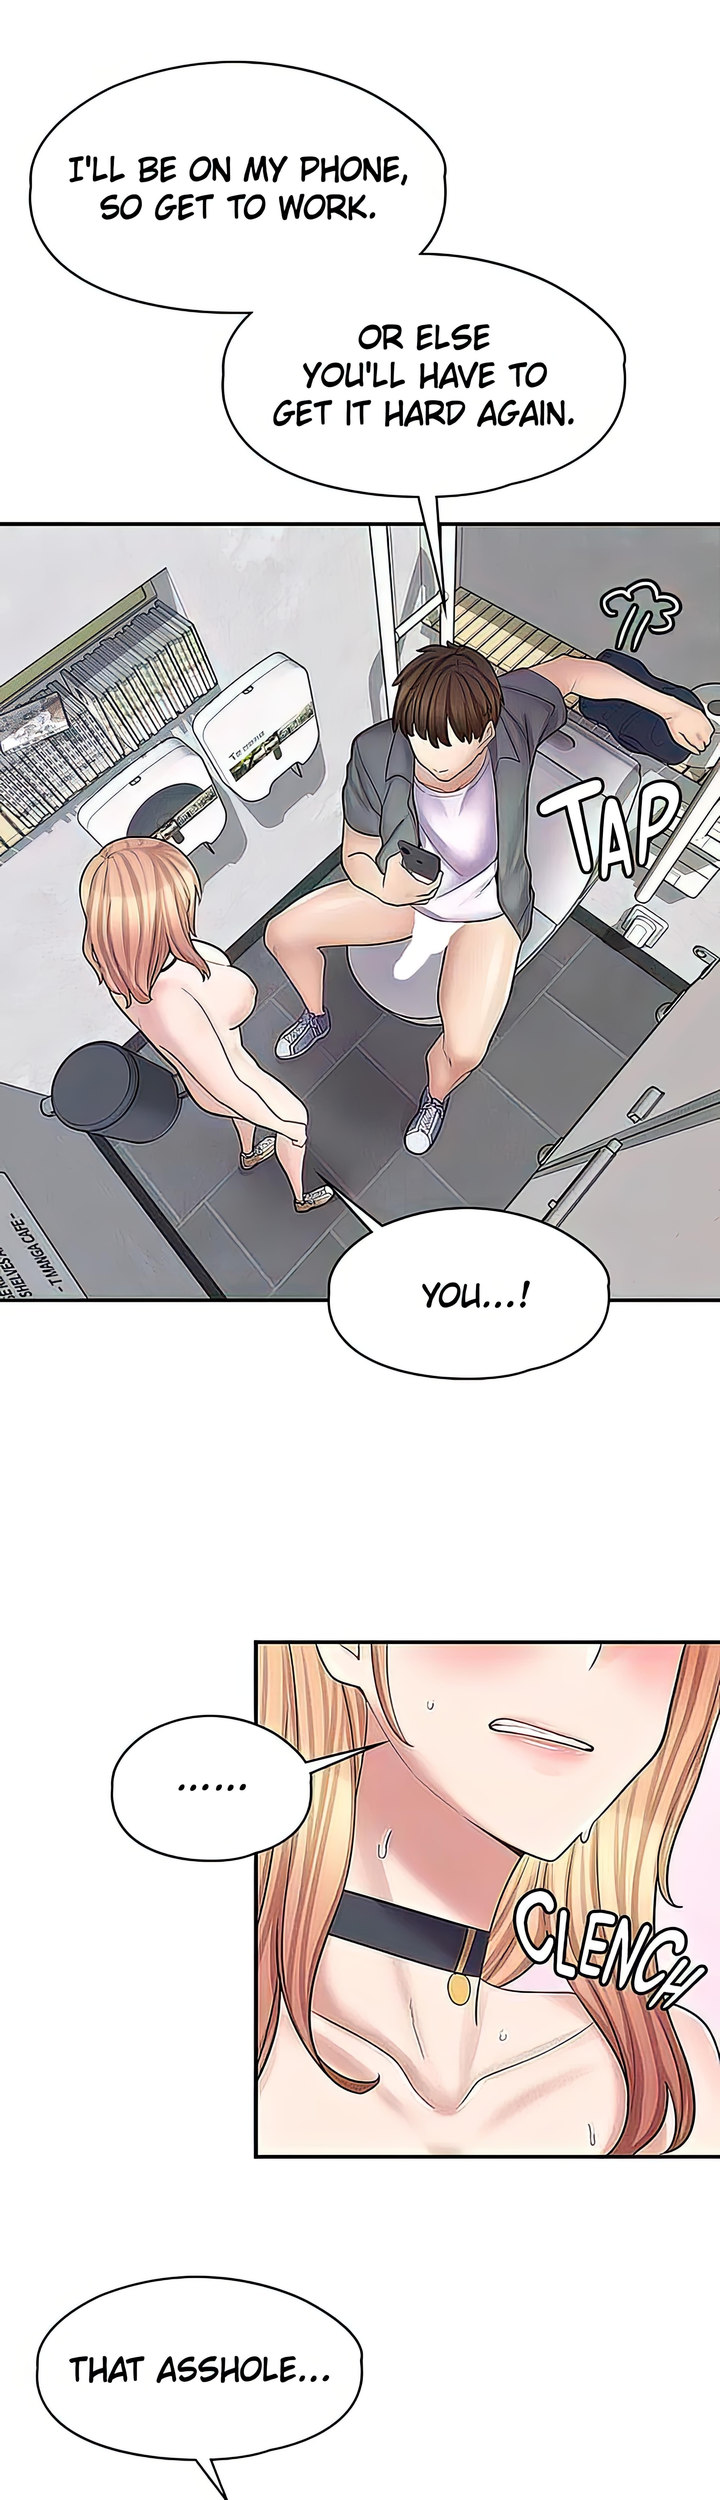 The image Erotic Manga Café Girls - Chapter 09 - 174ef0804c2bd69331 - ManhwaManga.io